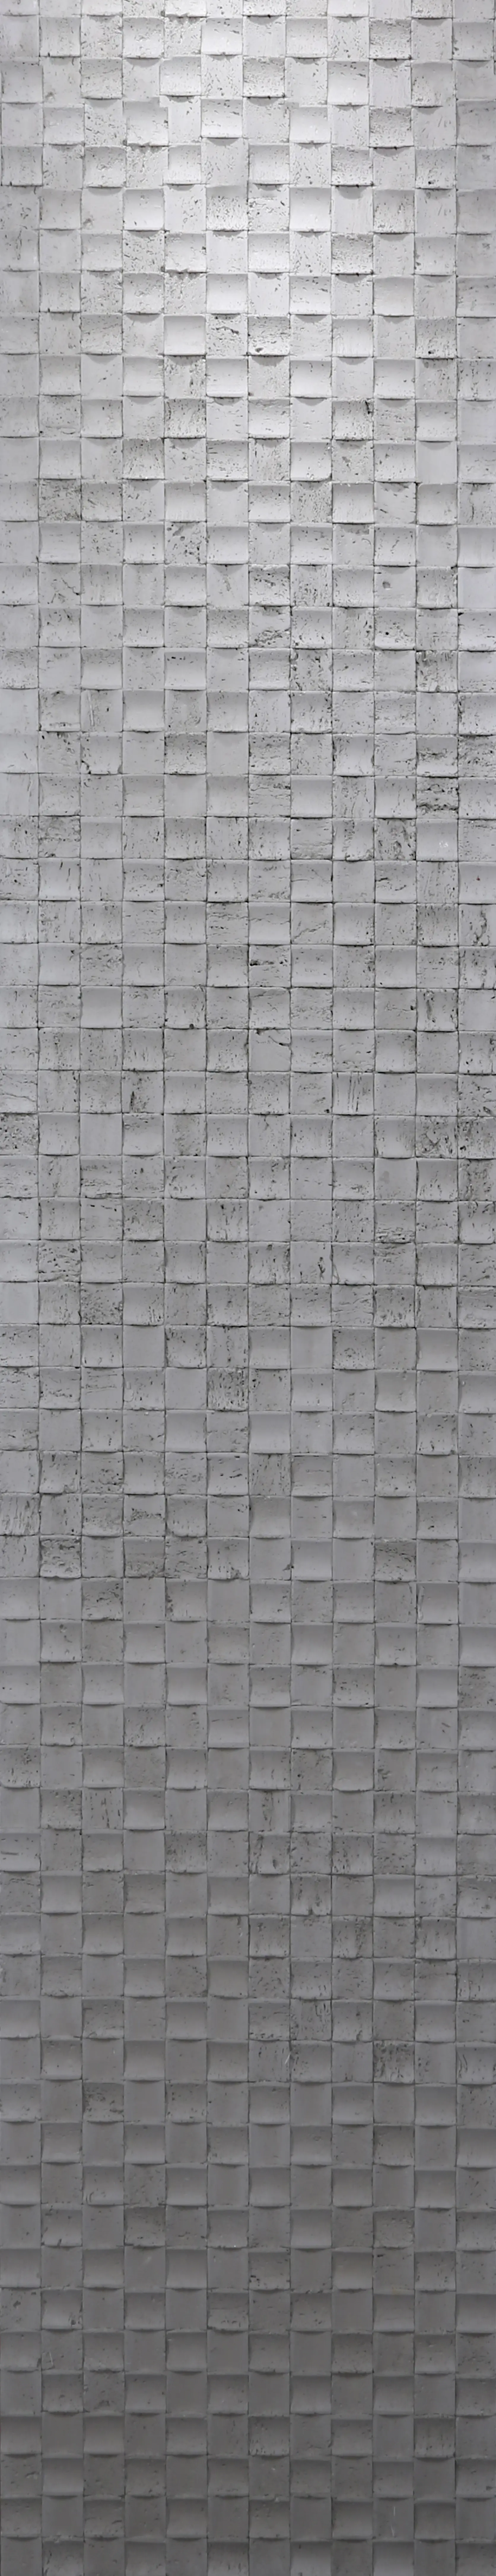 कलात्मक सीमेंट कास्टिंग बोर्ड पारंपरिक सामग्री सीमेंट रेत पत्थर पर्यावरण के अनुकूल योजक पत्थर मोज़ेक श्रृंखला